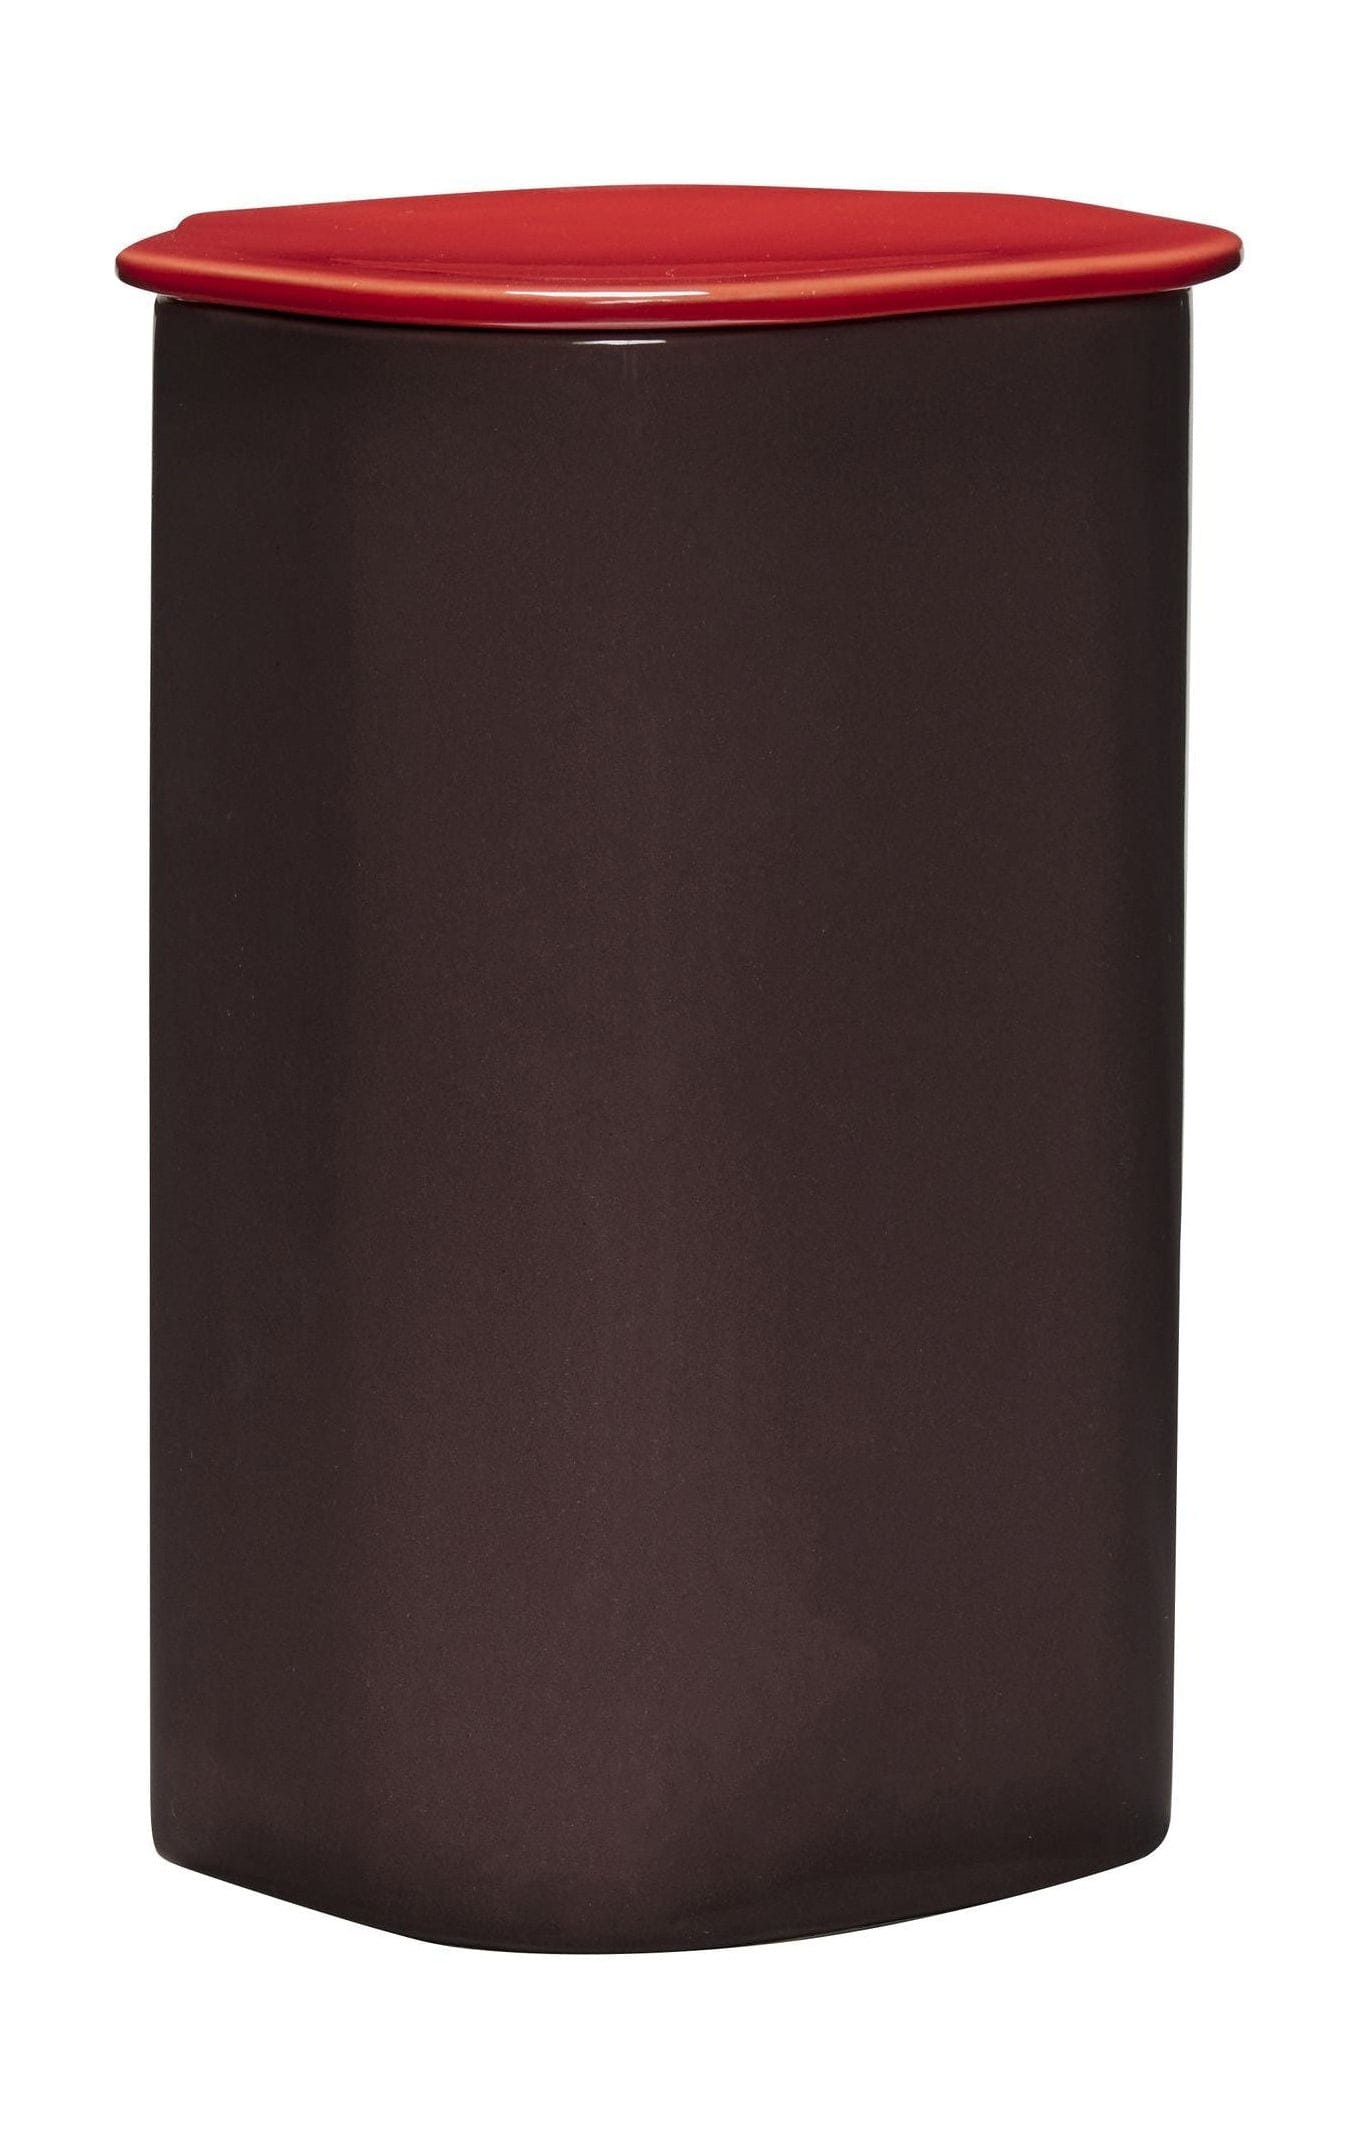 Hübsch Amare lagring med locket stort, vinrött/rött